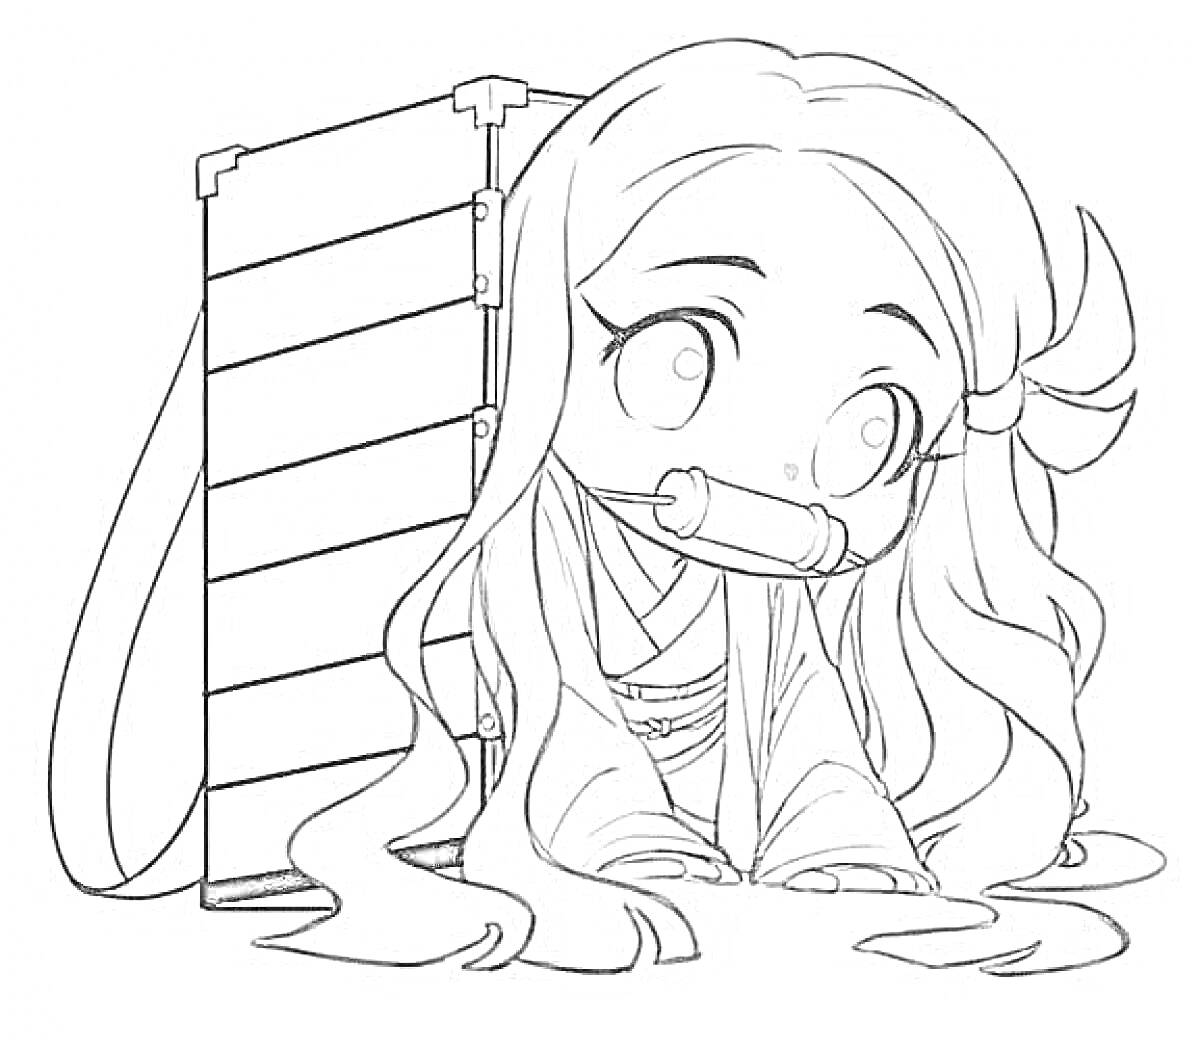 Раскраска Девочка с длинными волосами и коробкой за спиной, сидит на коленях и держит бамбуковую трубку во рту